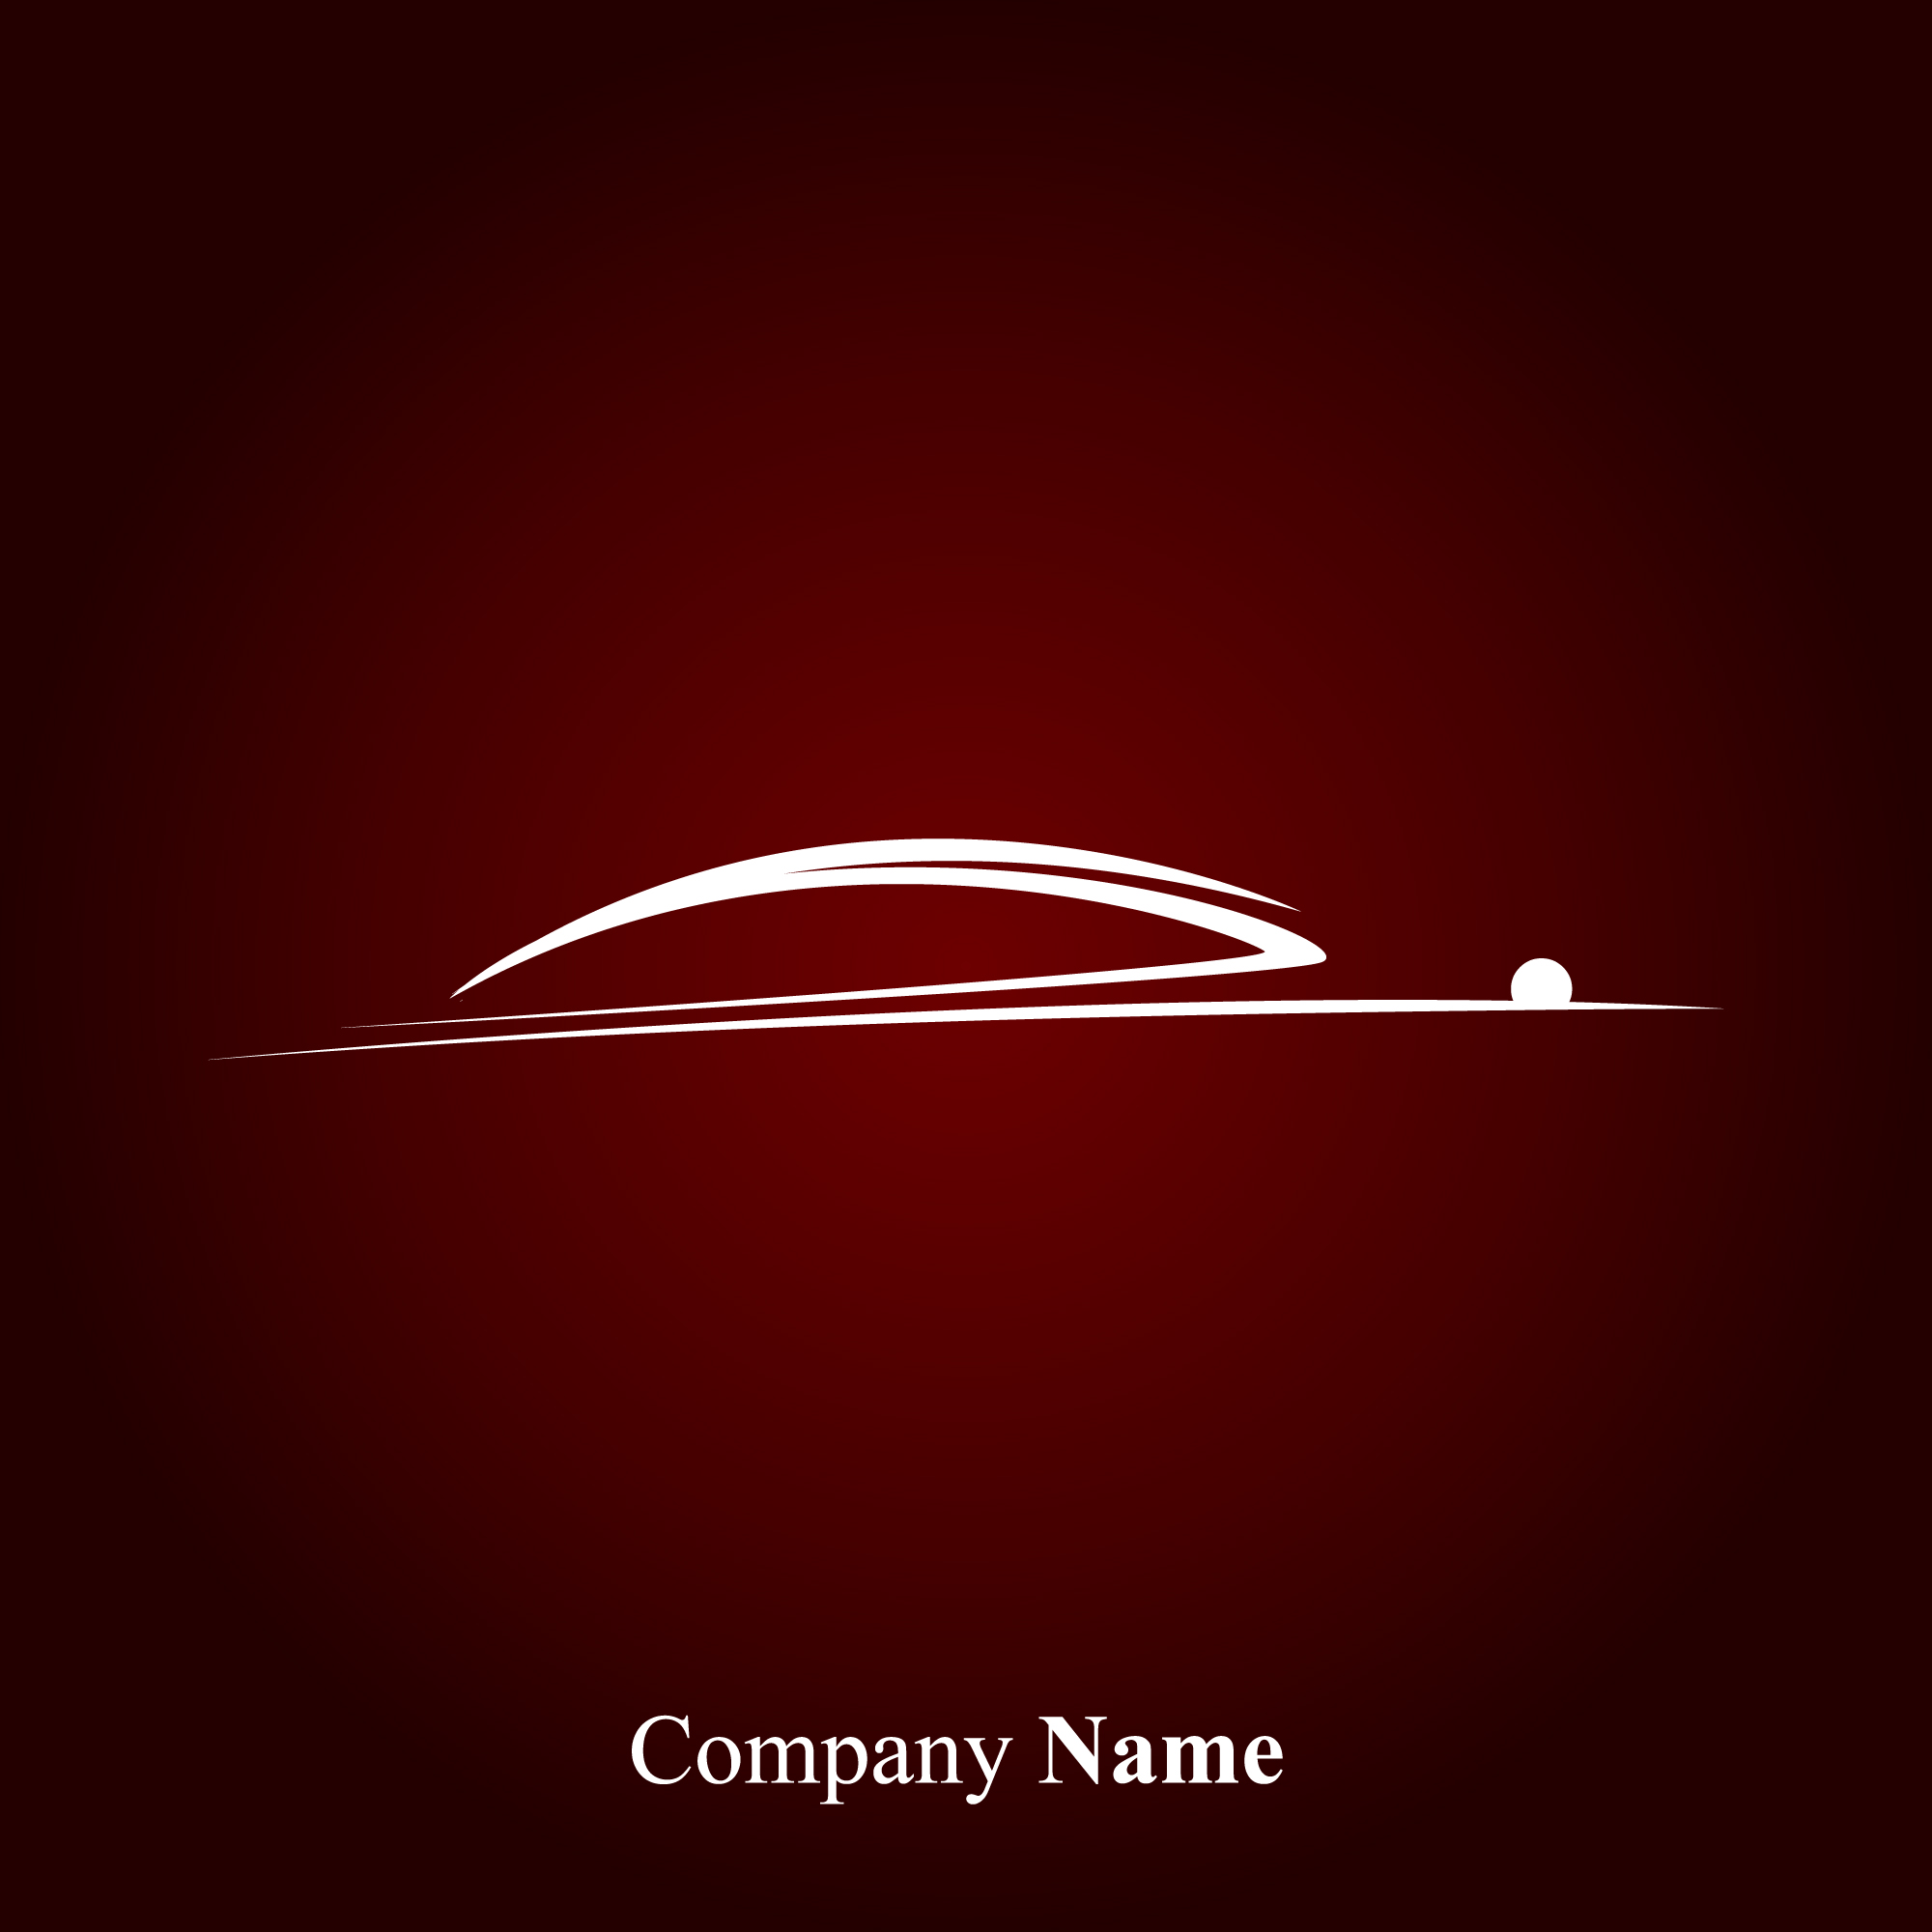 Creative Car logos design vector 04